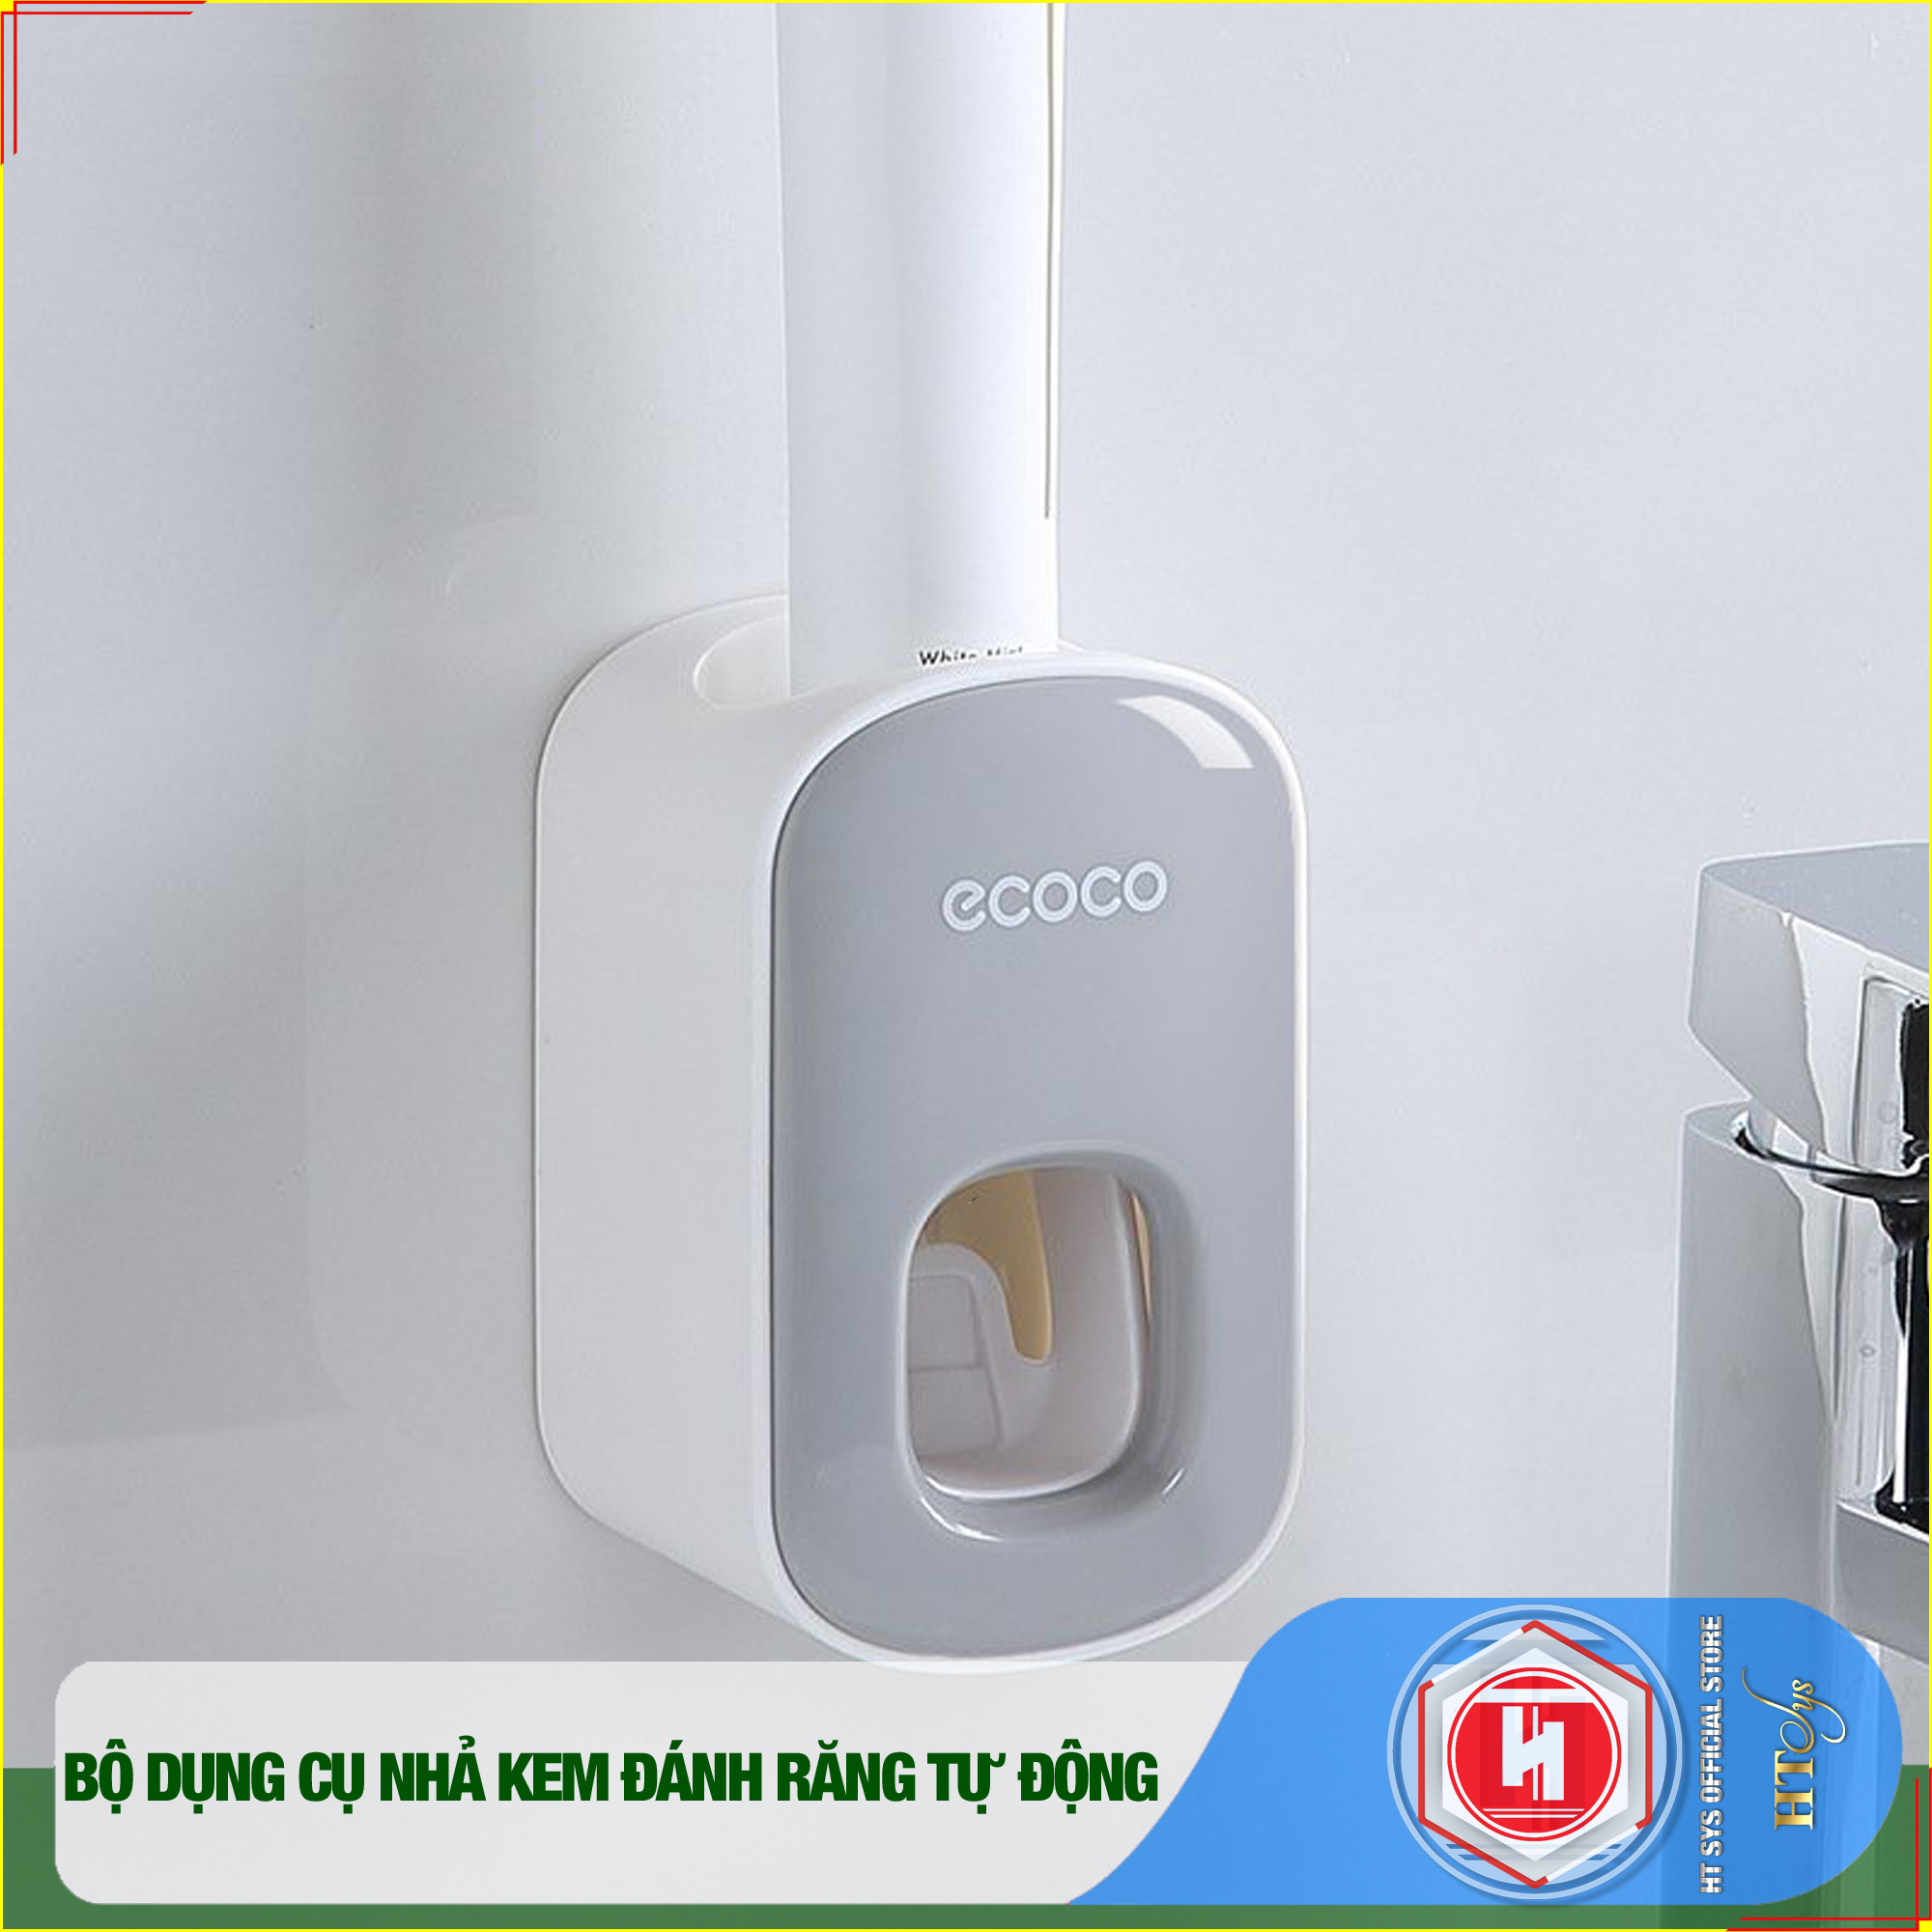 Bộ dụng cụ nhả kem đánh răng tự động 2/3/4 cốc và giá treo bàn chải đa năng HT SYS-ECOCO-Chất liệu ABS cao cấp - [ Hàng Nhập Khẩu ]